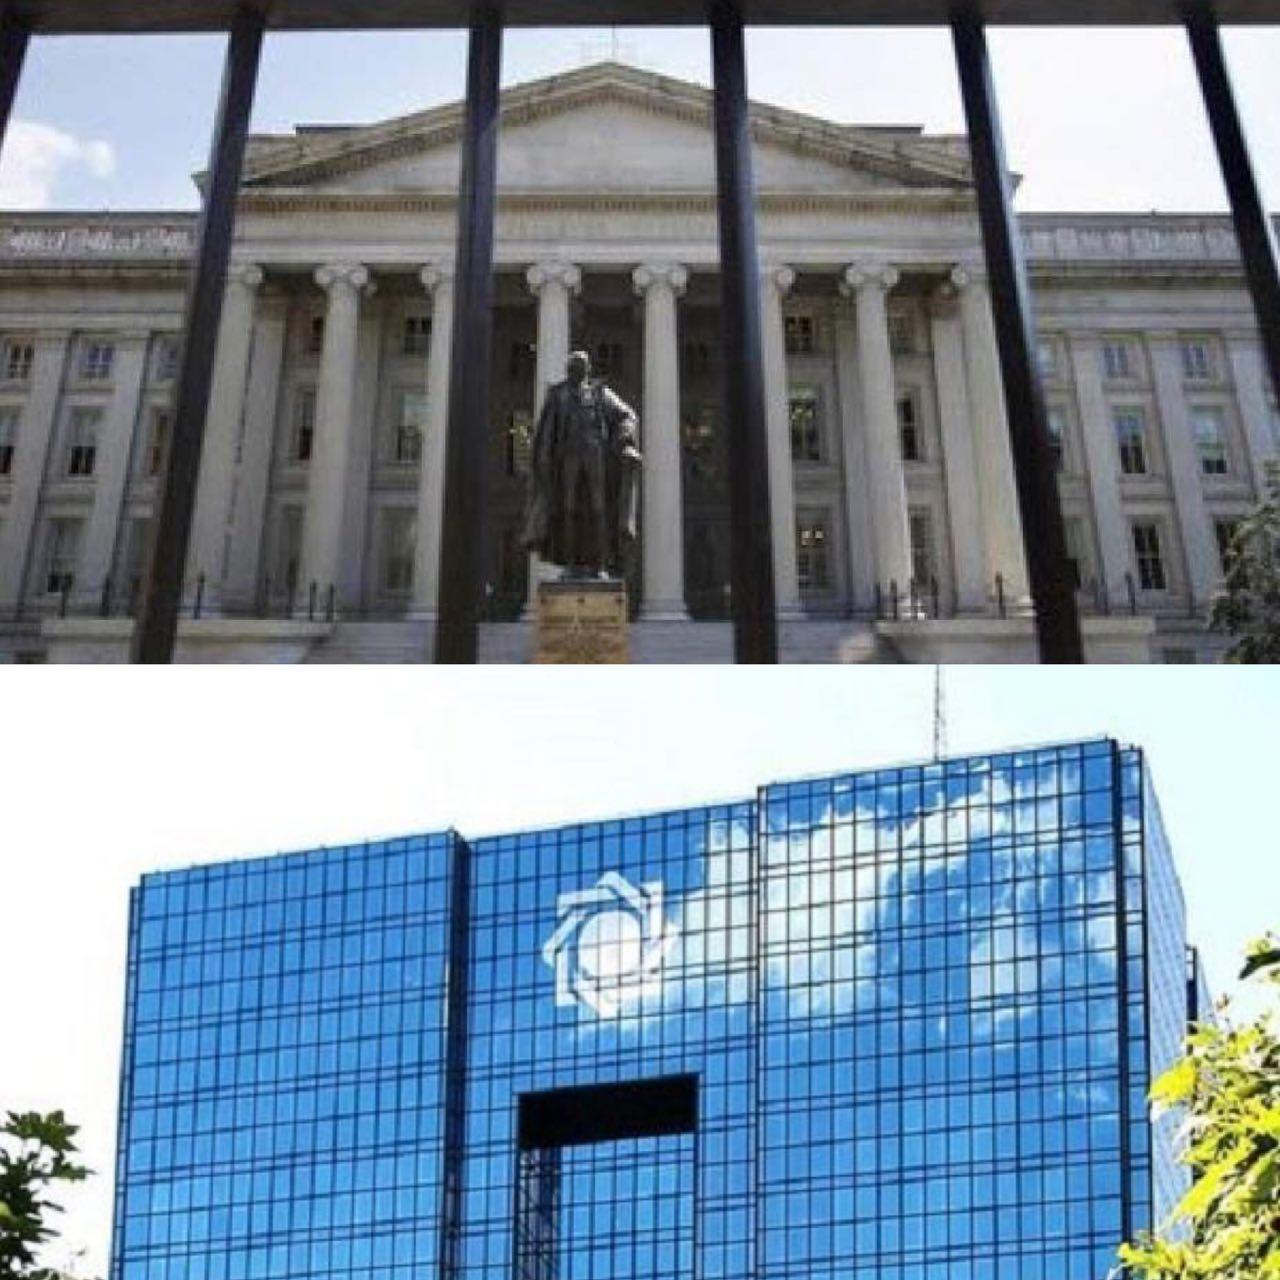 بازار پر سود مجوز جدید وزارت خزانه داری ایالات متحده برای صادرات کالا به ایران از طریق بانک مرکزی